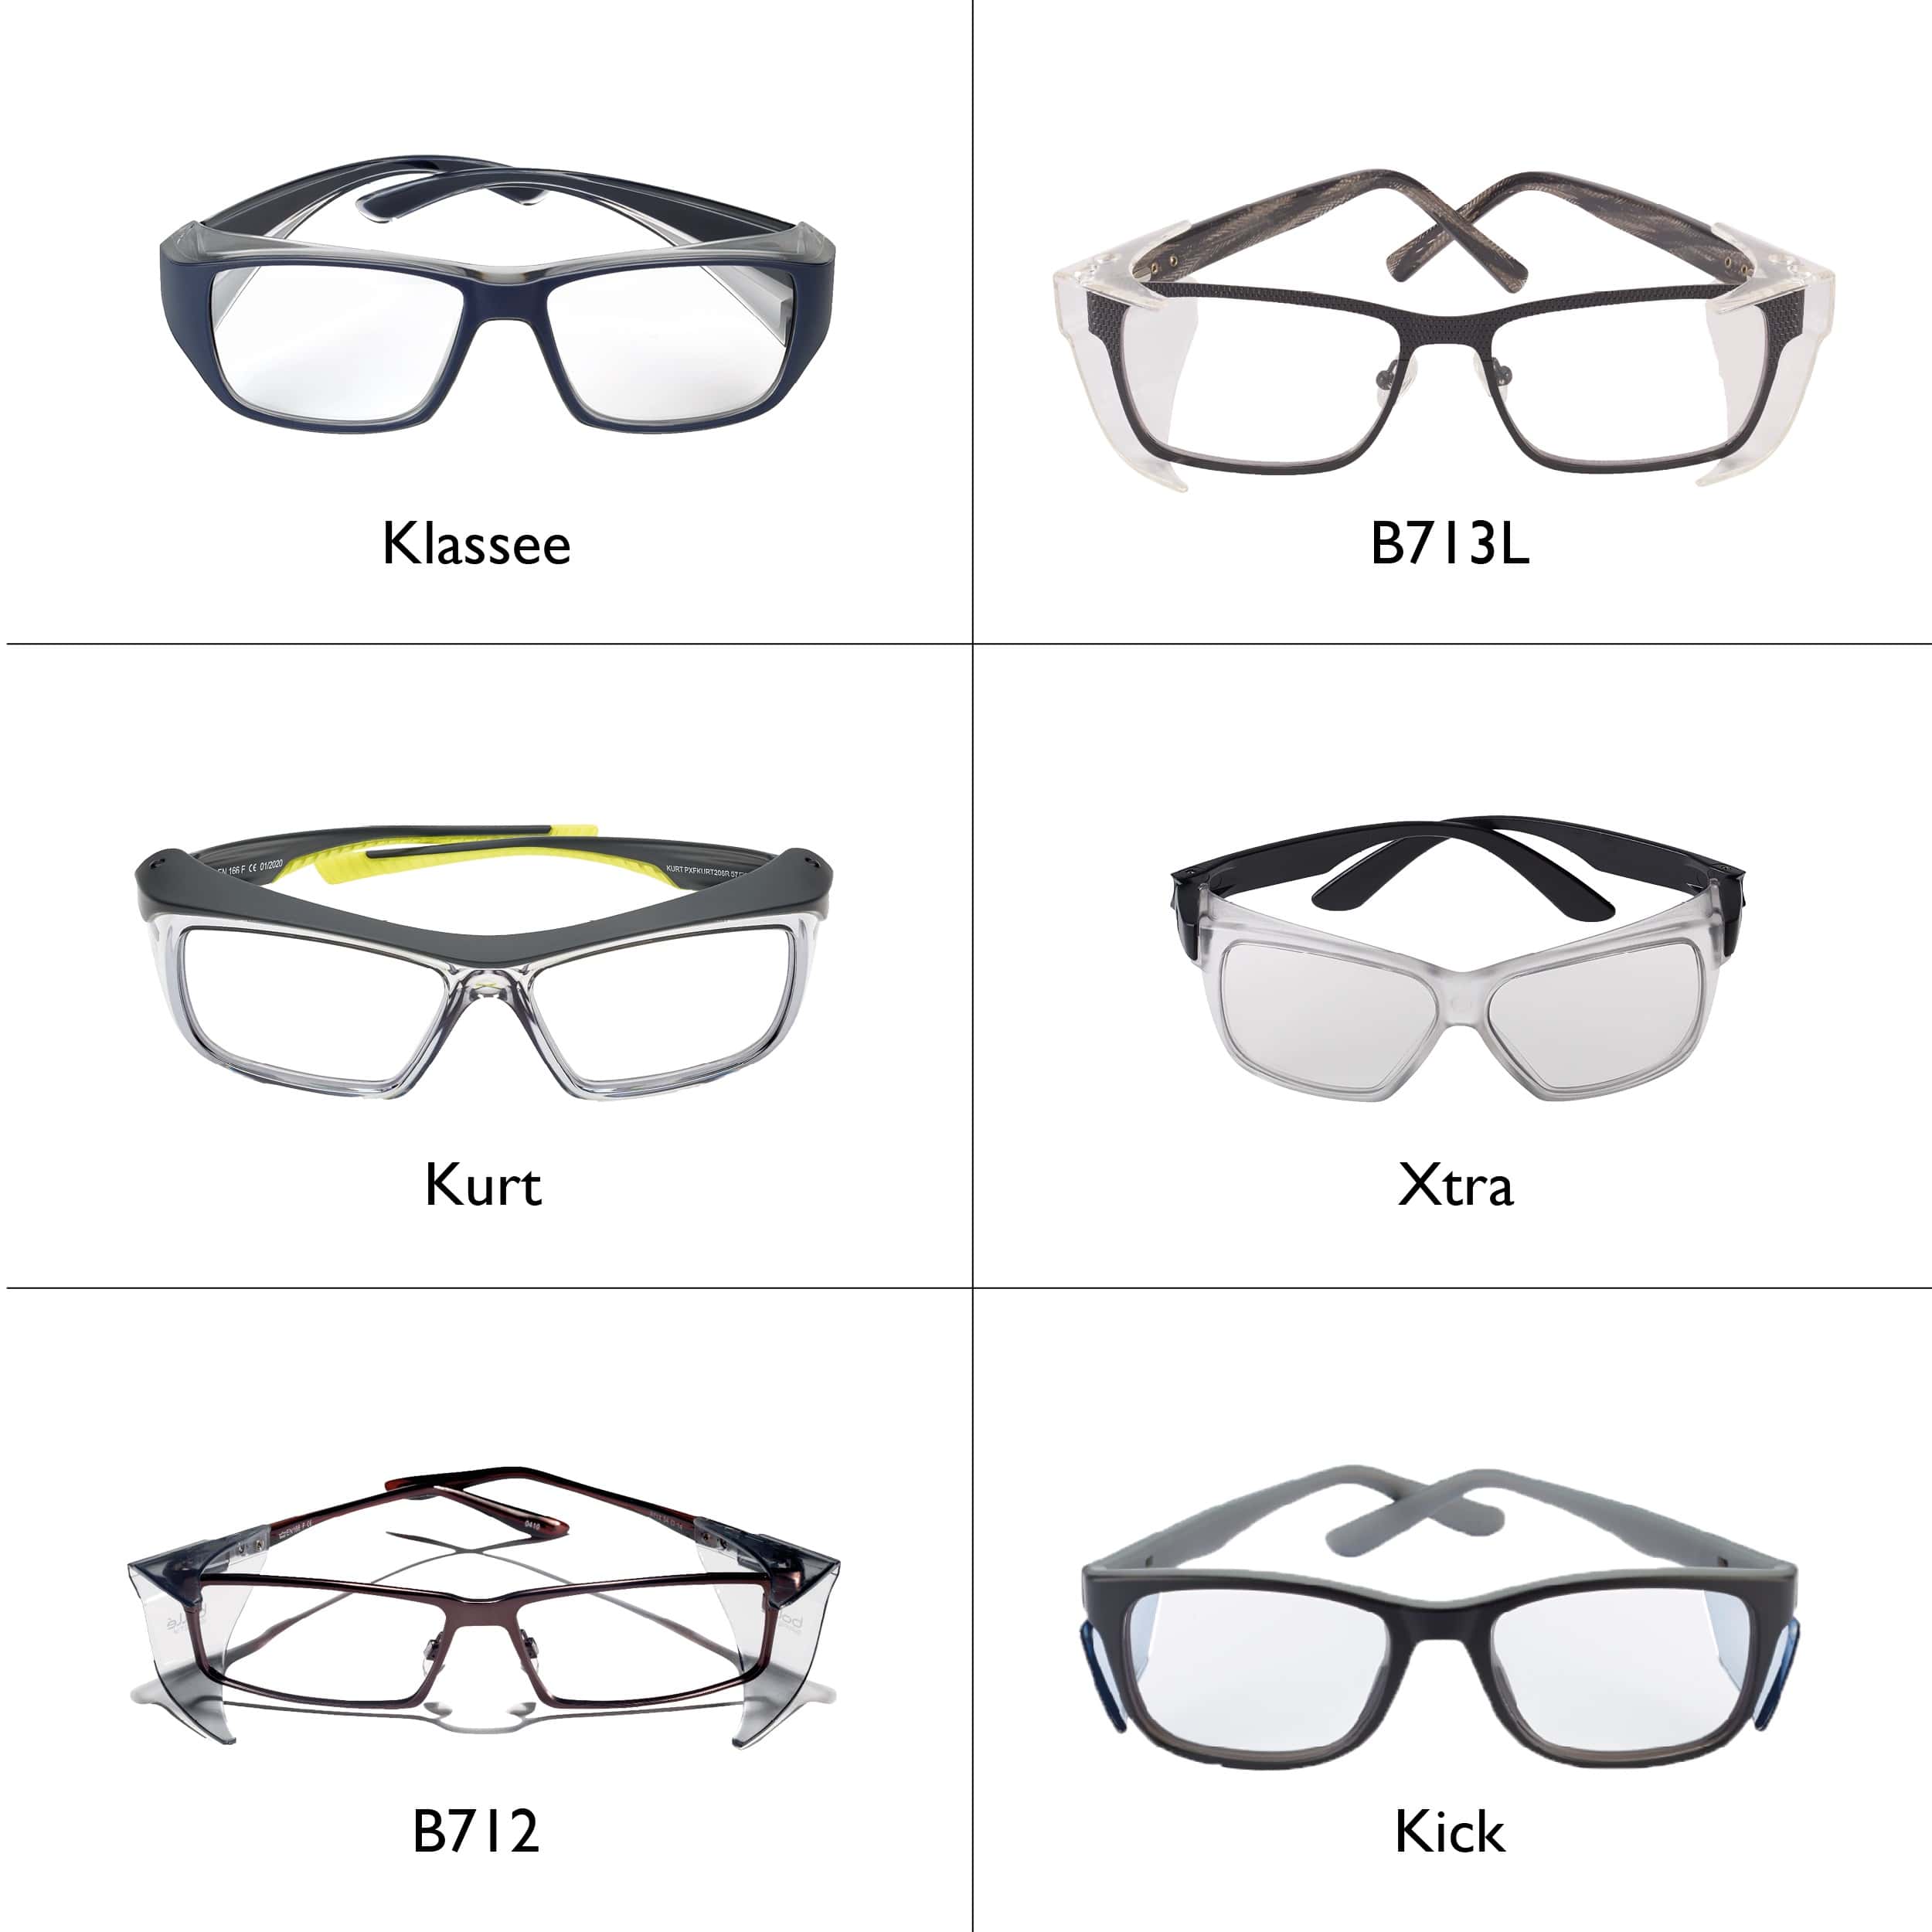 Verschillende soorten veiligheidsbrillen